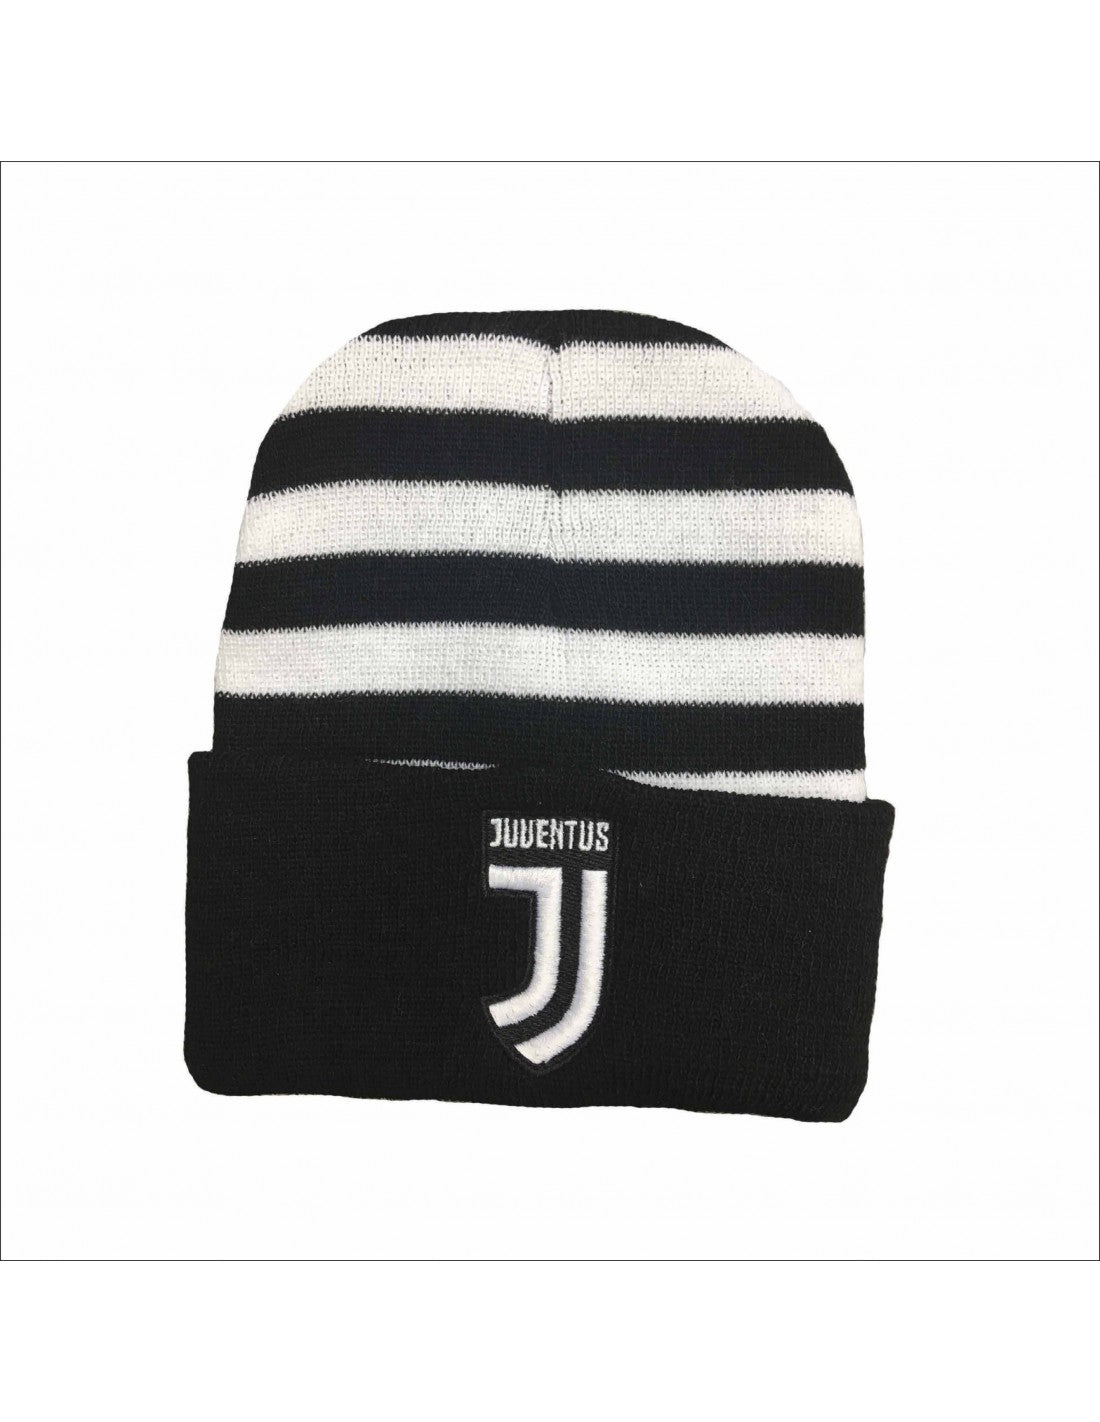 Cappello Juventus